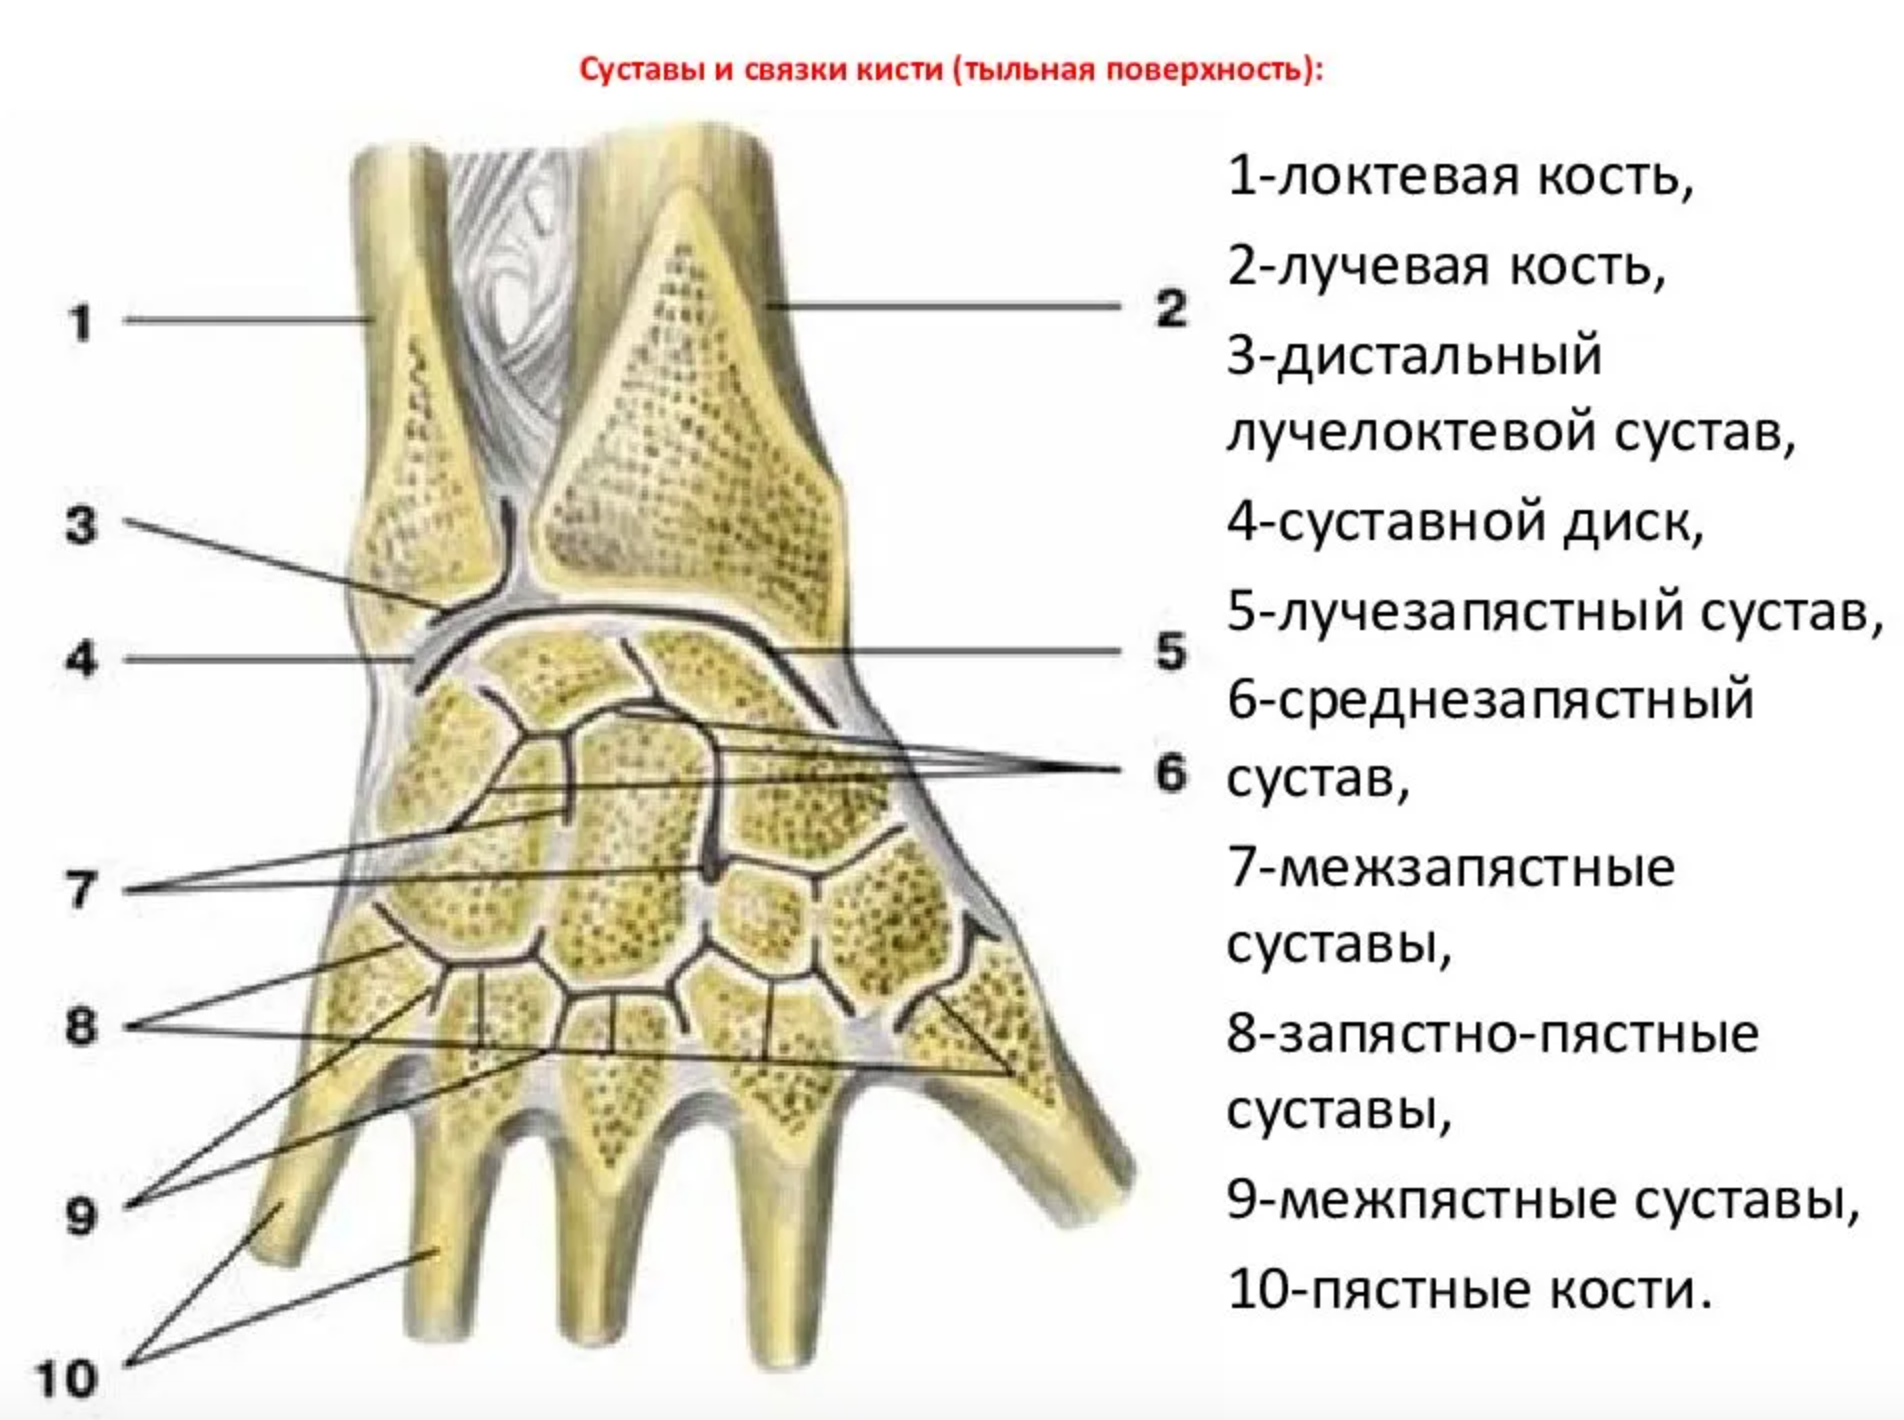 Суставной диск лучезапястного сустава. Дистальный лучелоктевой сустав анатомия связки. Среднезапястный сустав связки. Лучезапястный сустав анатомия суставные поверхности. Болят лучевые кости почему